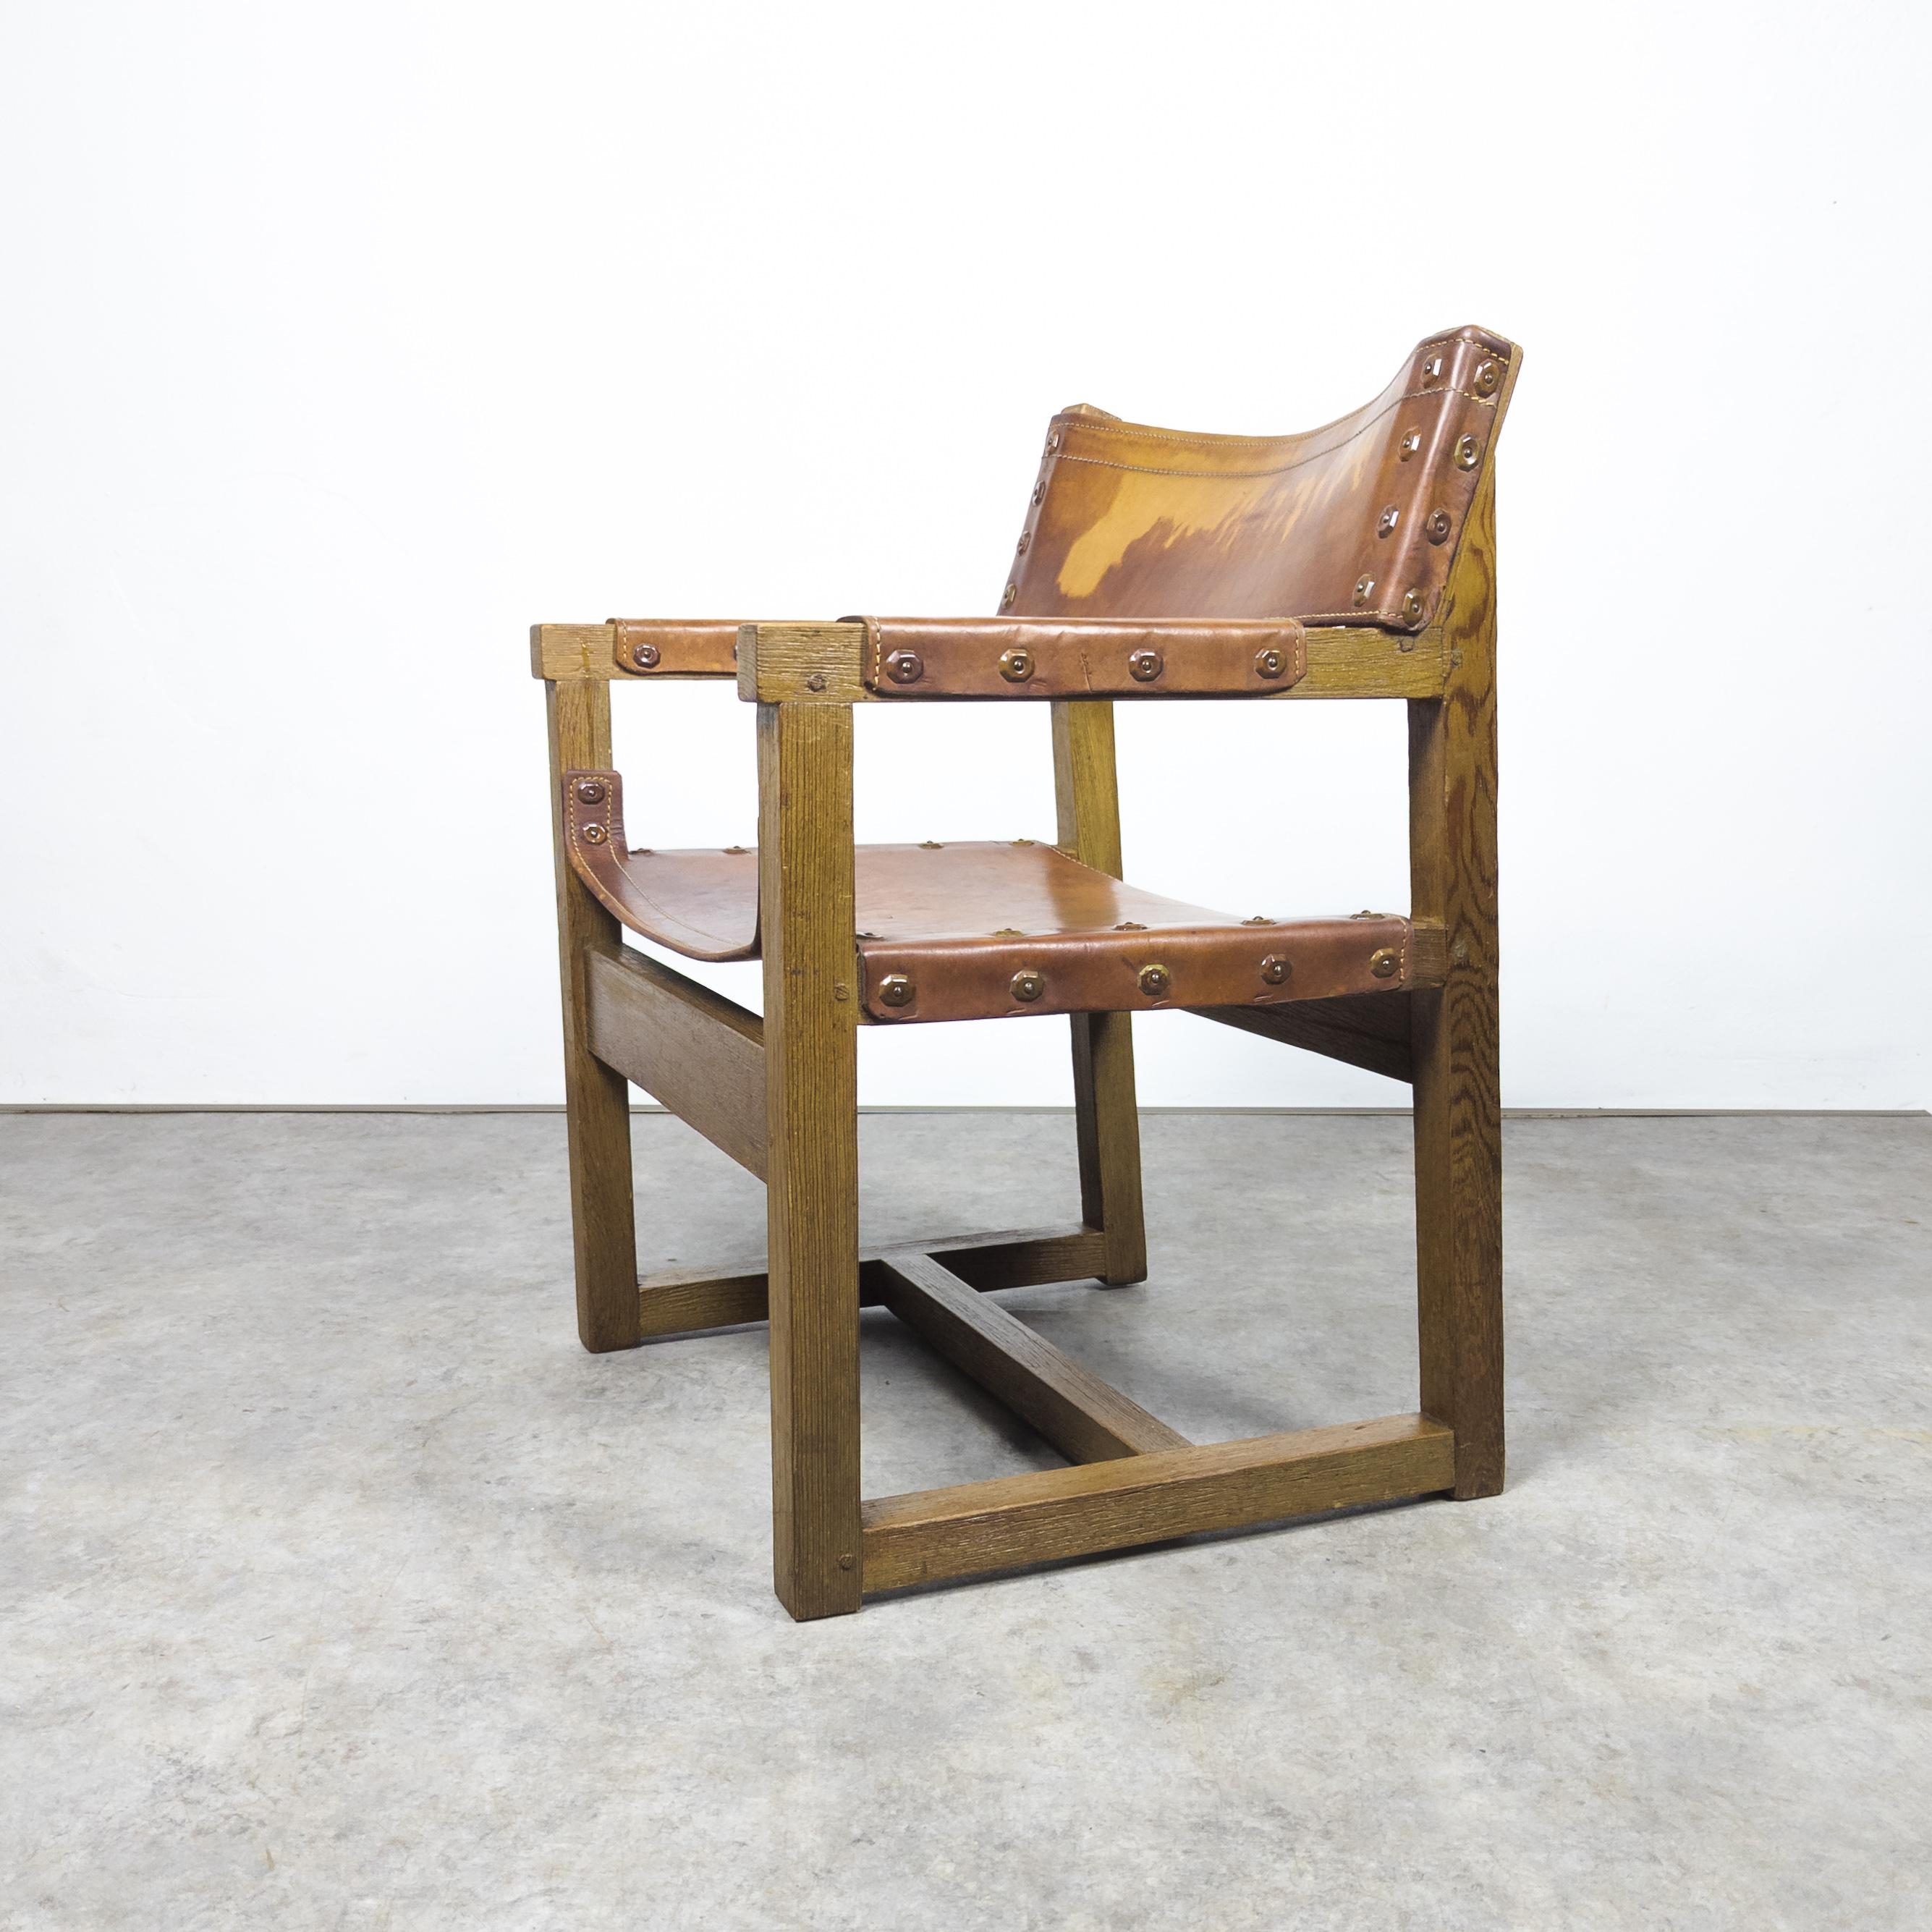 Seltener Sessel aus massivem Kiefernholz und Leder, hergestellt von Biosca, Spanien in den 1950er Jahren. Der fantastische, langlebige Stuhl des spanischen Herstellers BIOSCA besteht aus einer Kieferkonstruktion und einer luxuriösen Sitzfläche aus